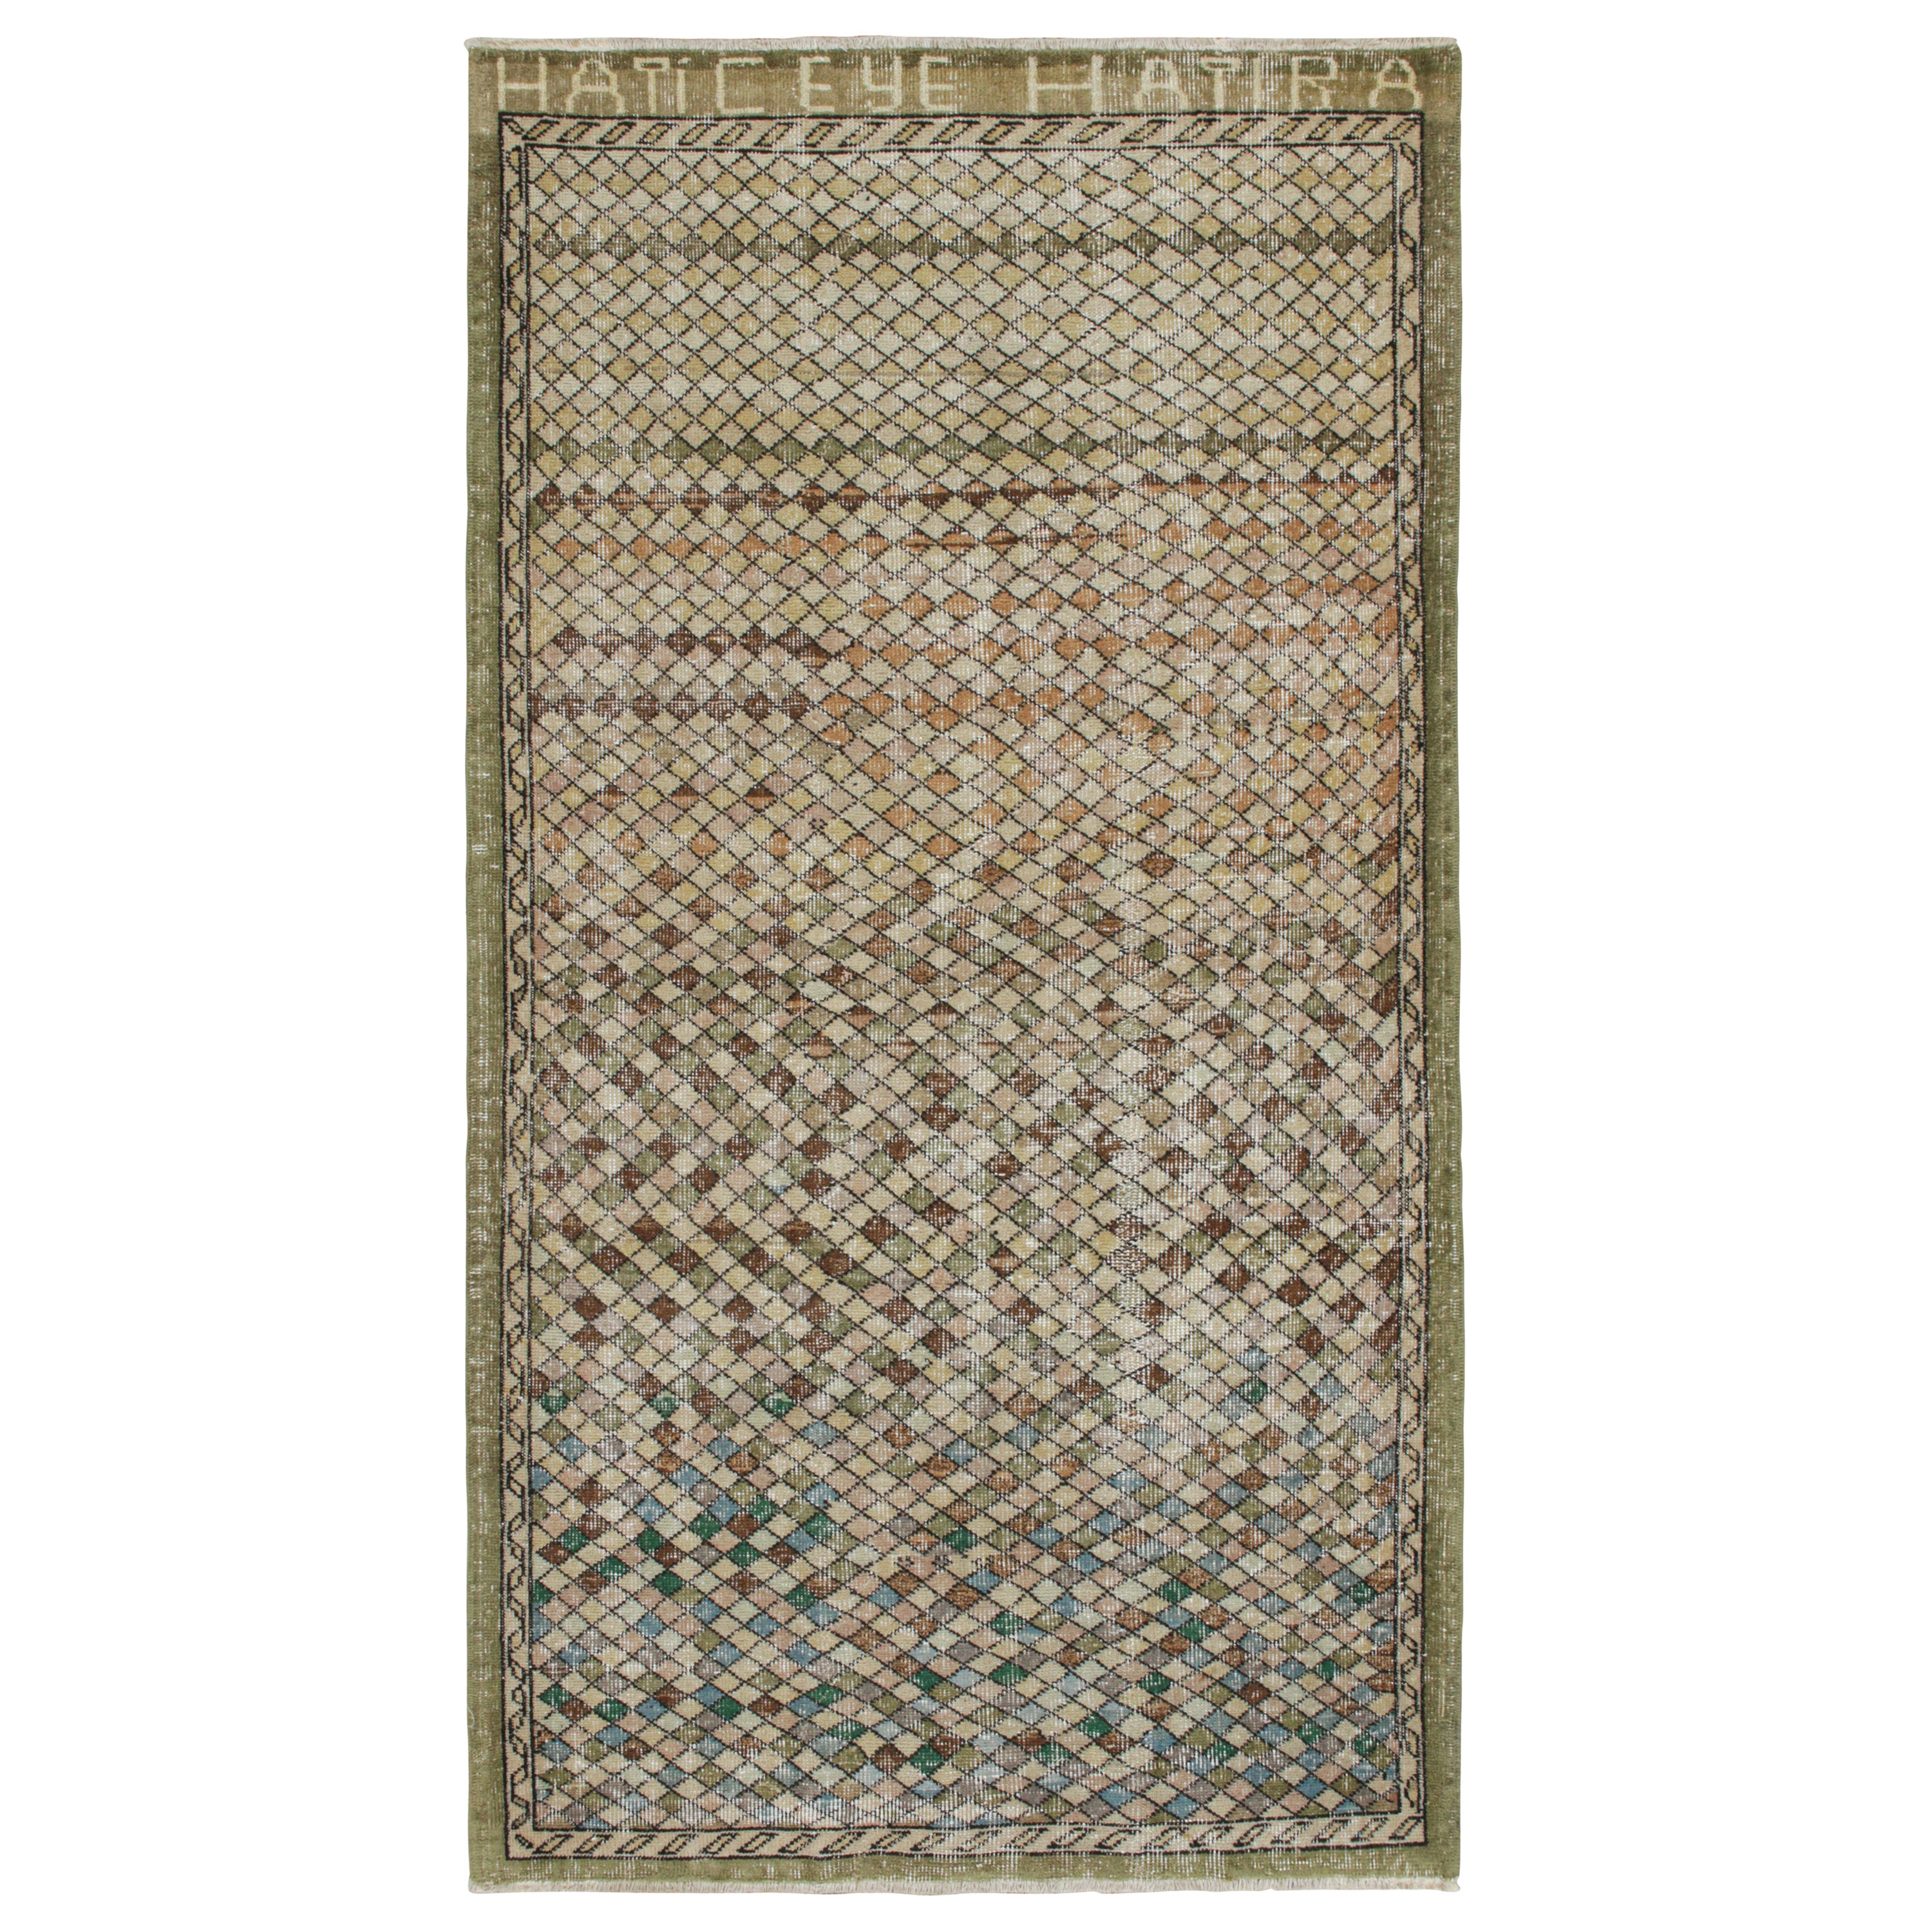  Vintage Zeki Müren Teppich in einem grünen und braunen geometrischen Muster von Rug & Kilim